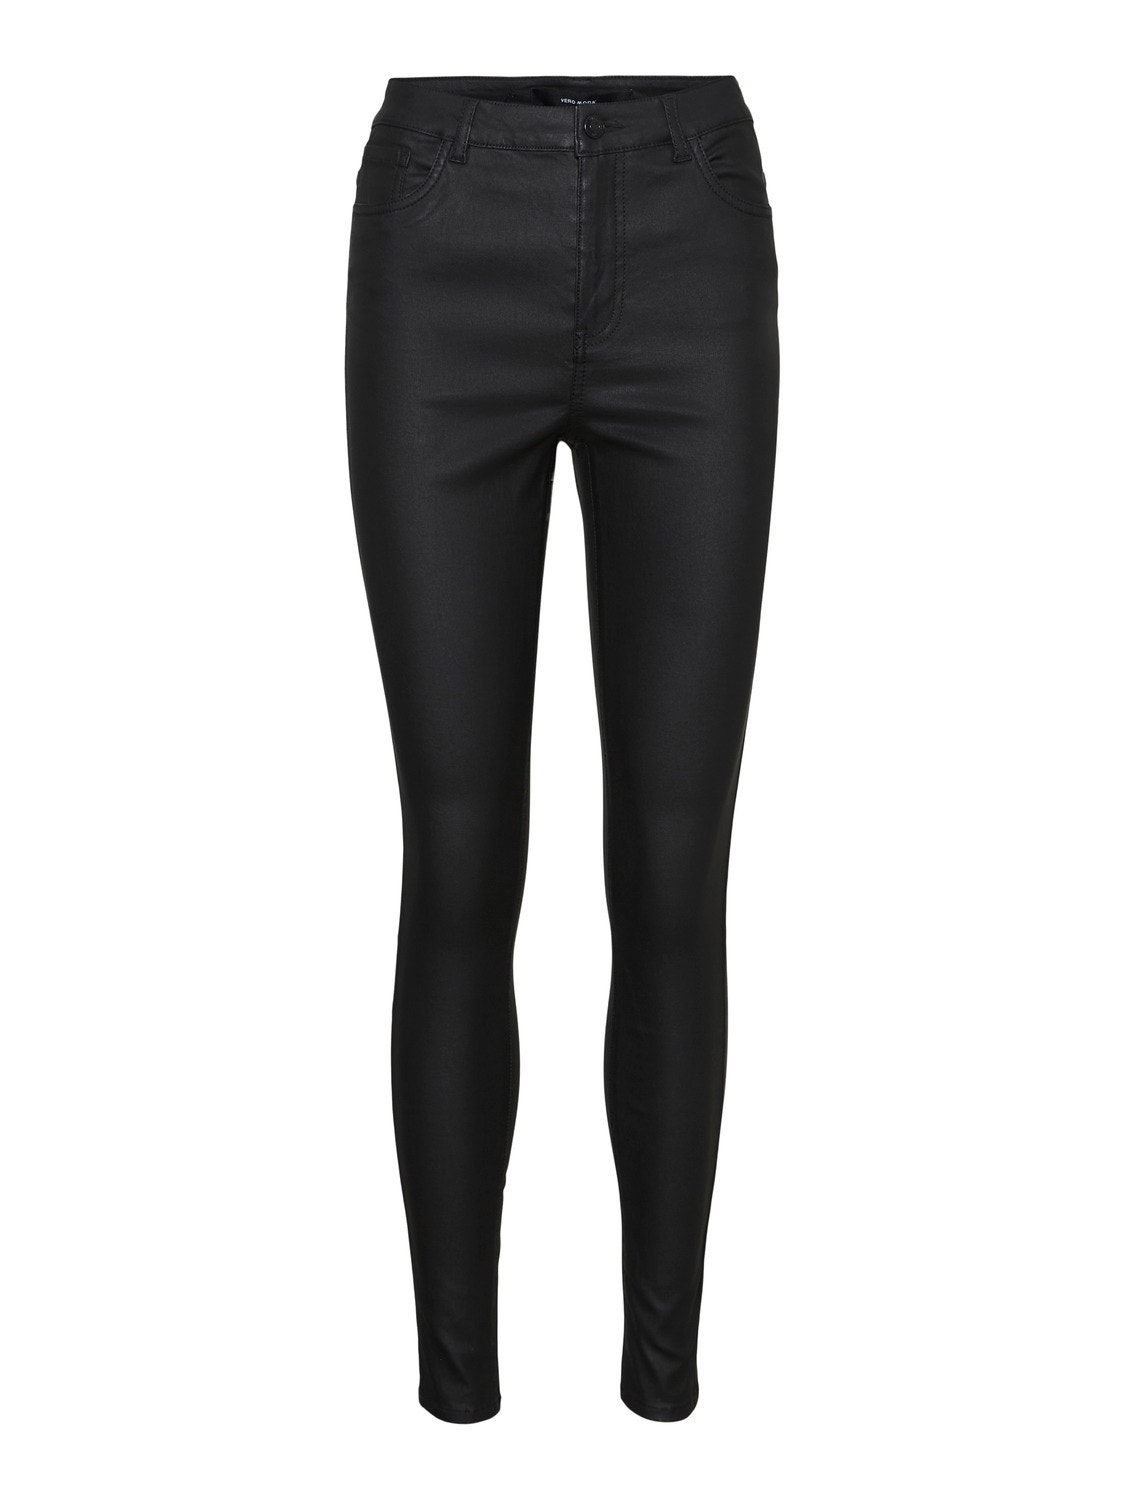 Vero Moda VMSOPHIA Trousers -Black - 10292353